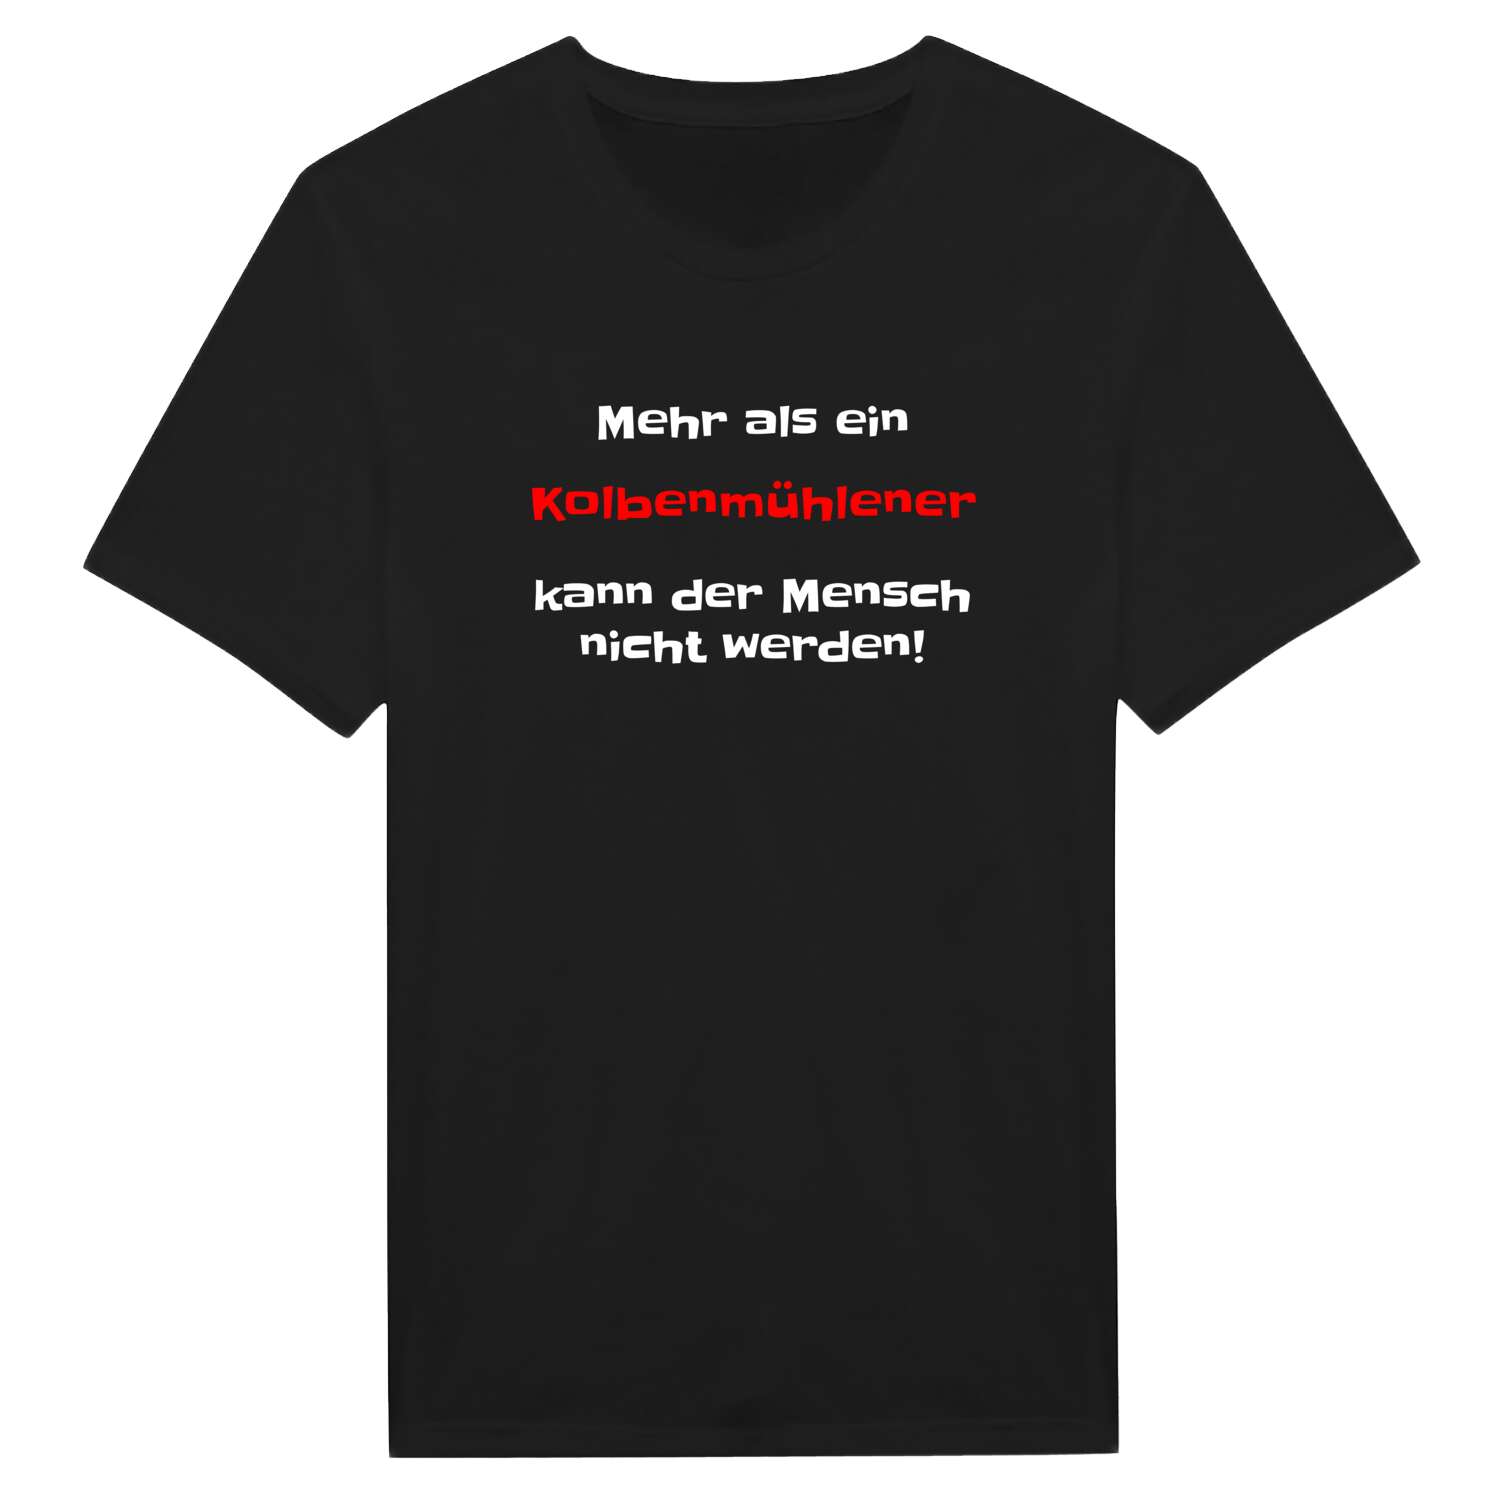 Kolbenmühle T-Shirt »Mehr als ein«